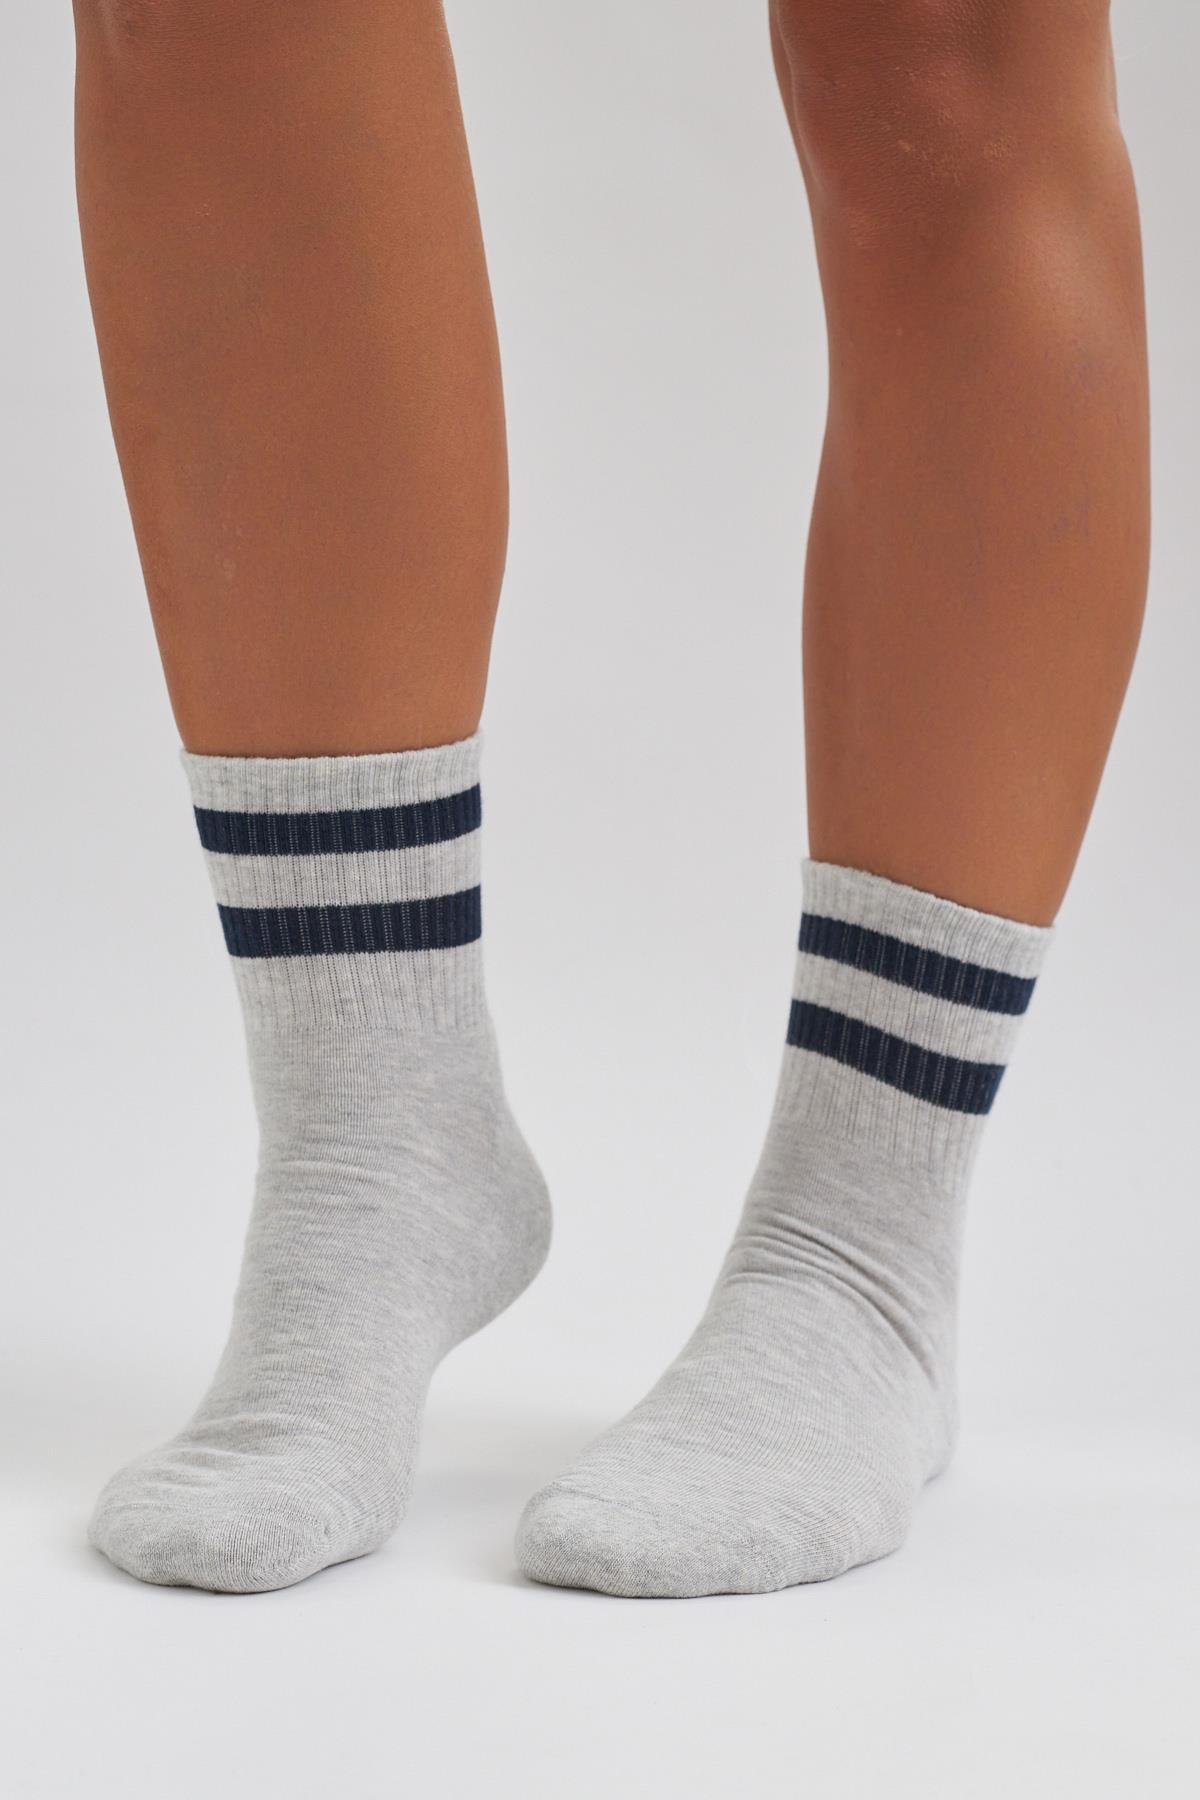 Havlu Taban Çizgili Kısa Konç Erkek Soket Çorap Gri / Siyah